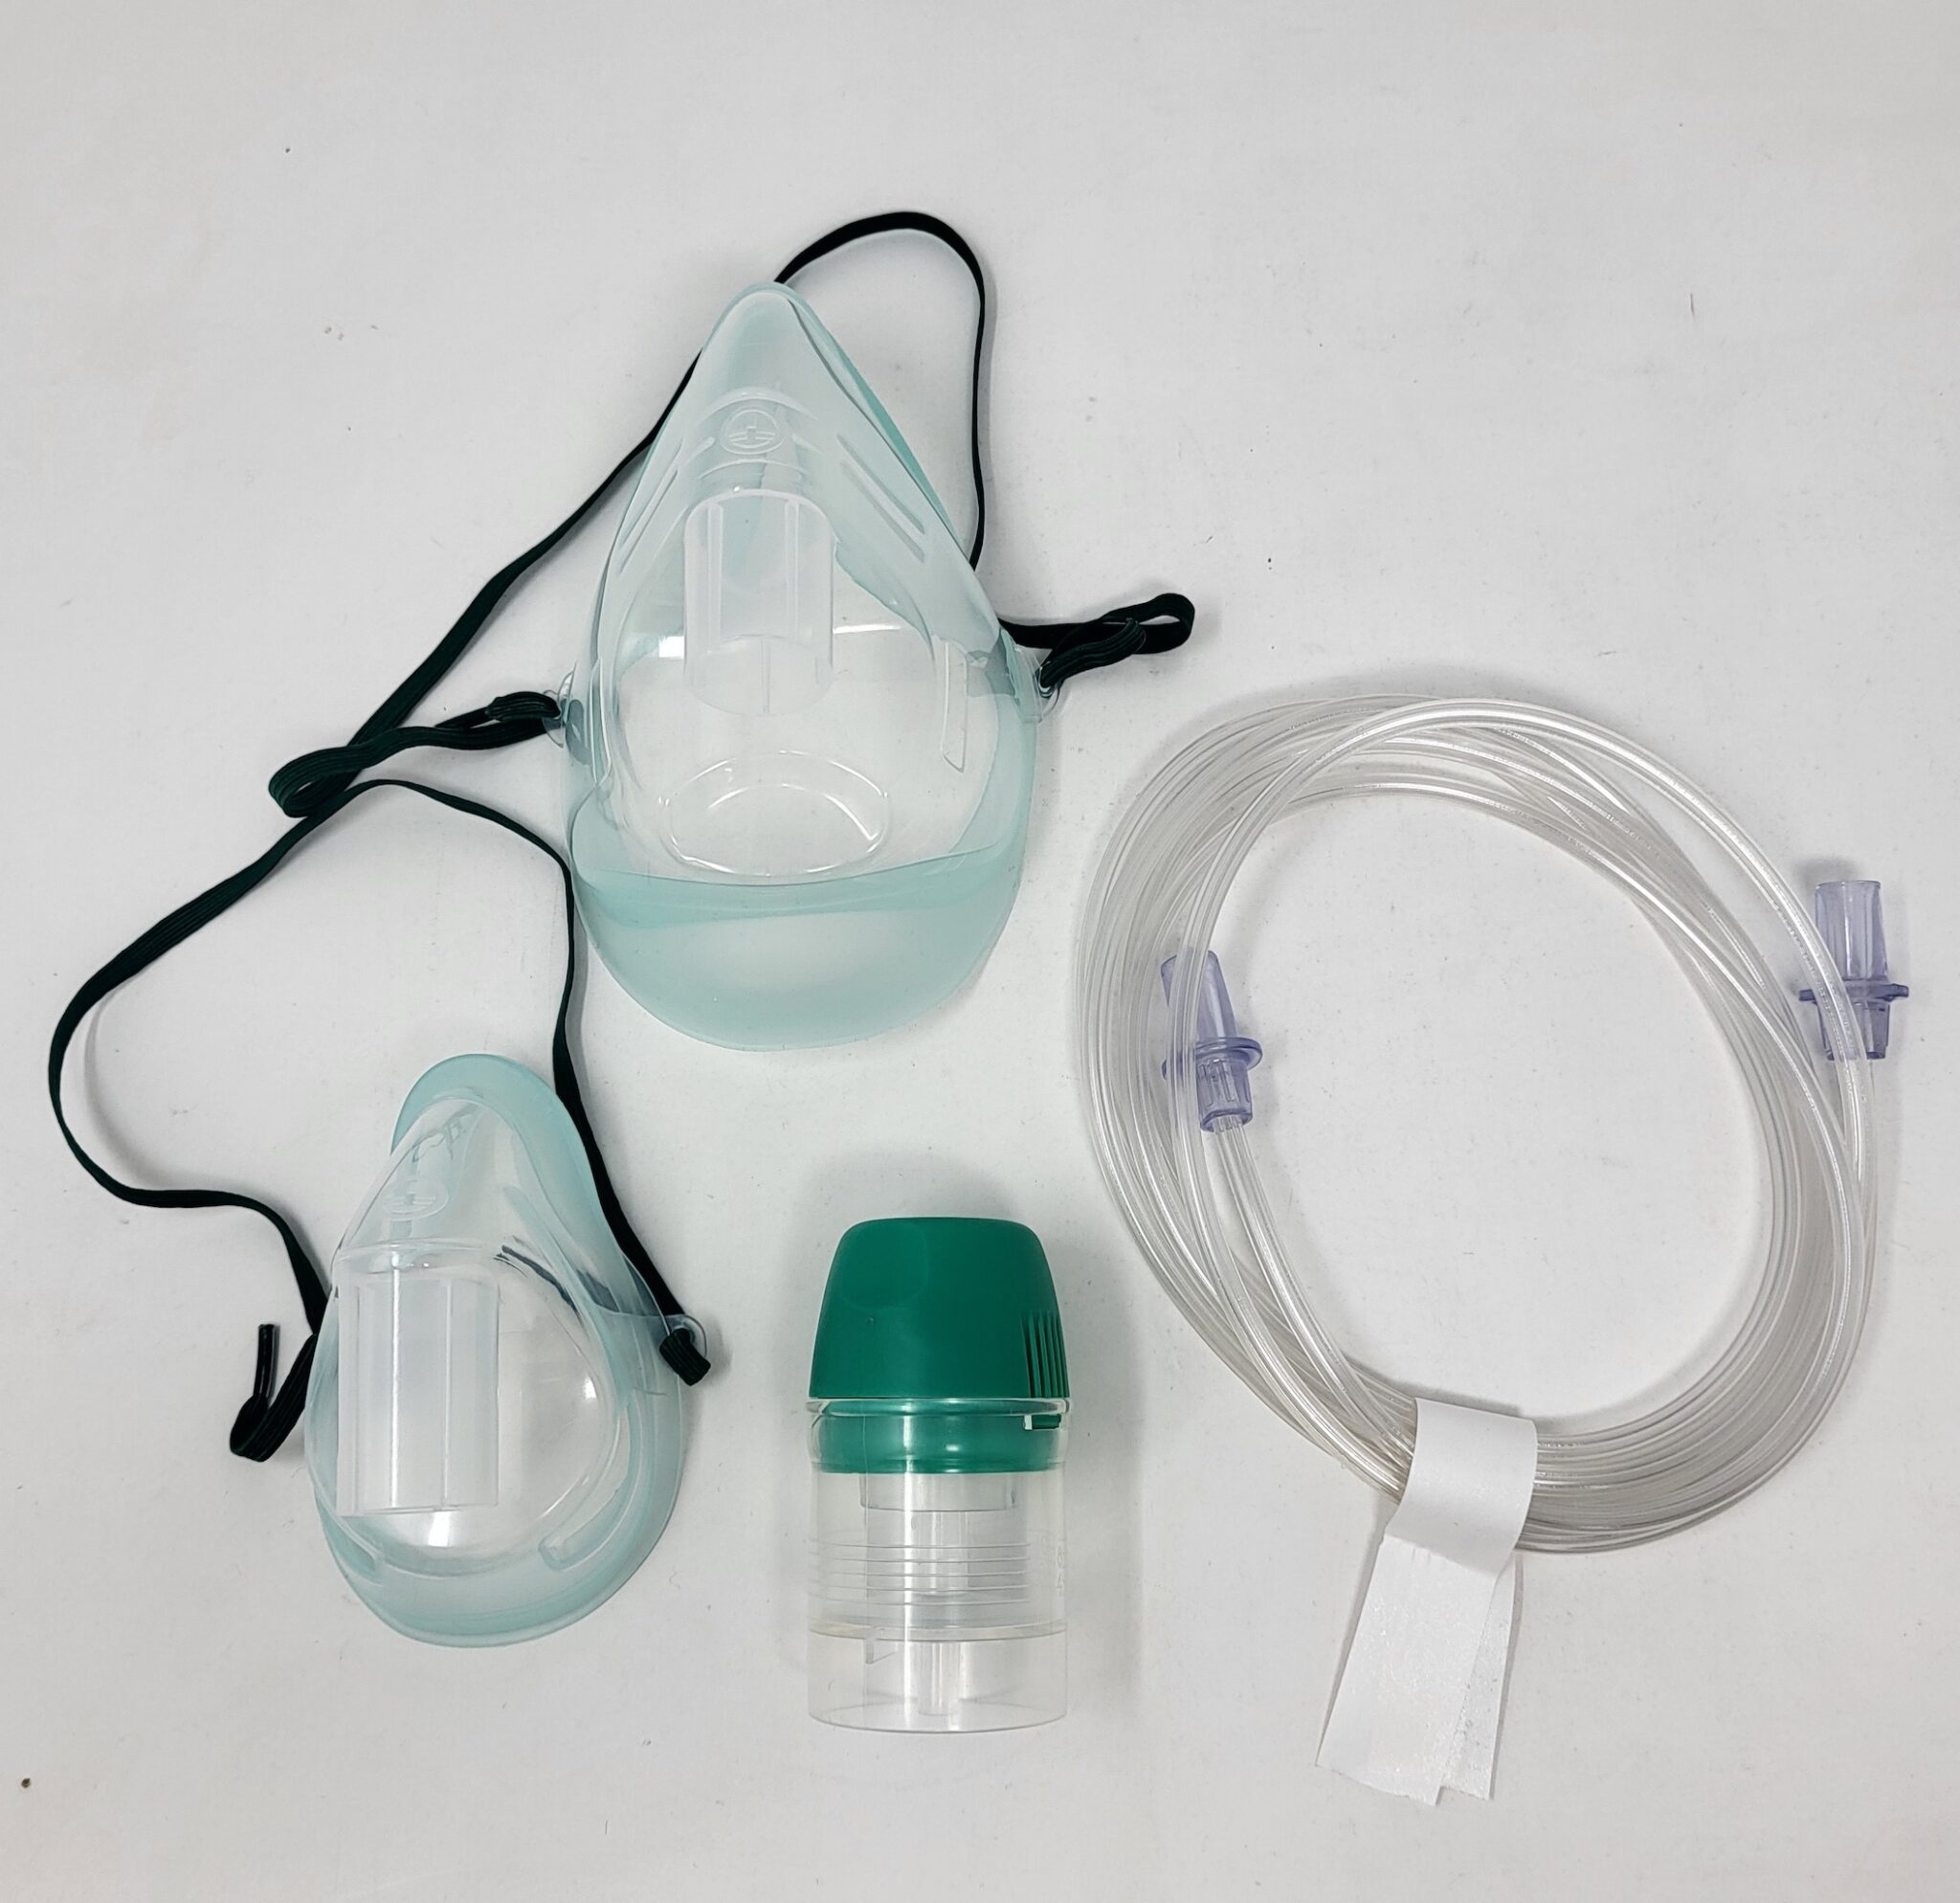 Nebuliser, masks and oxygen tubing